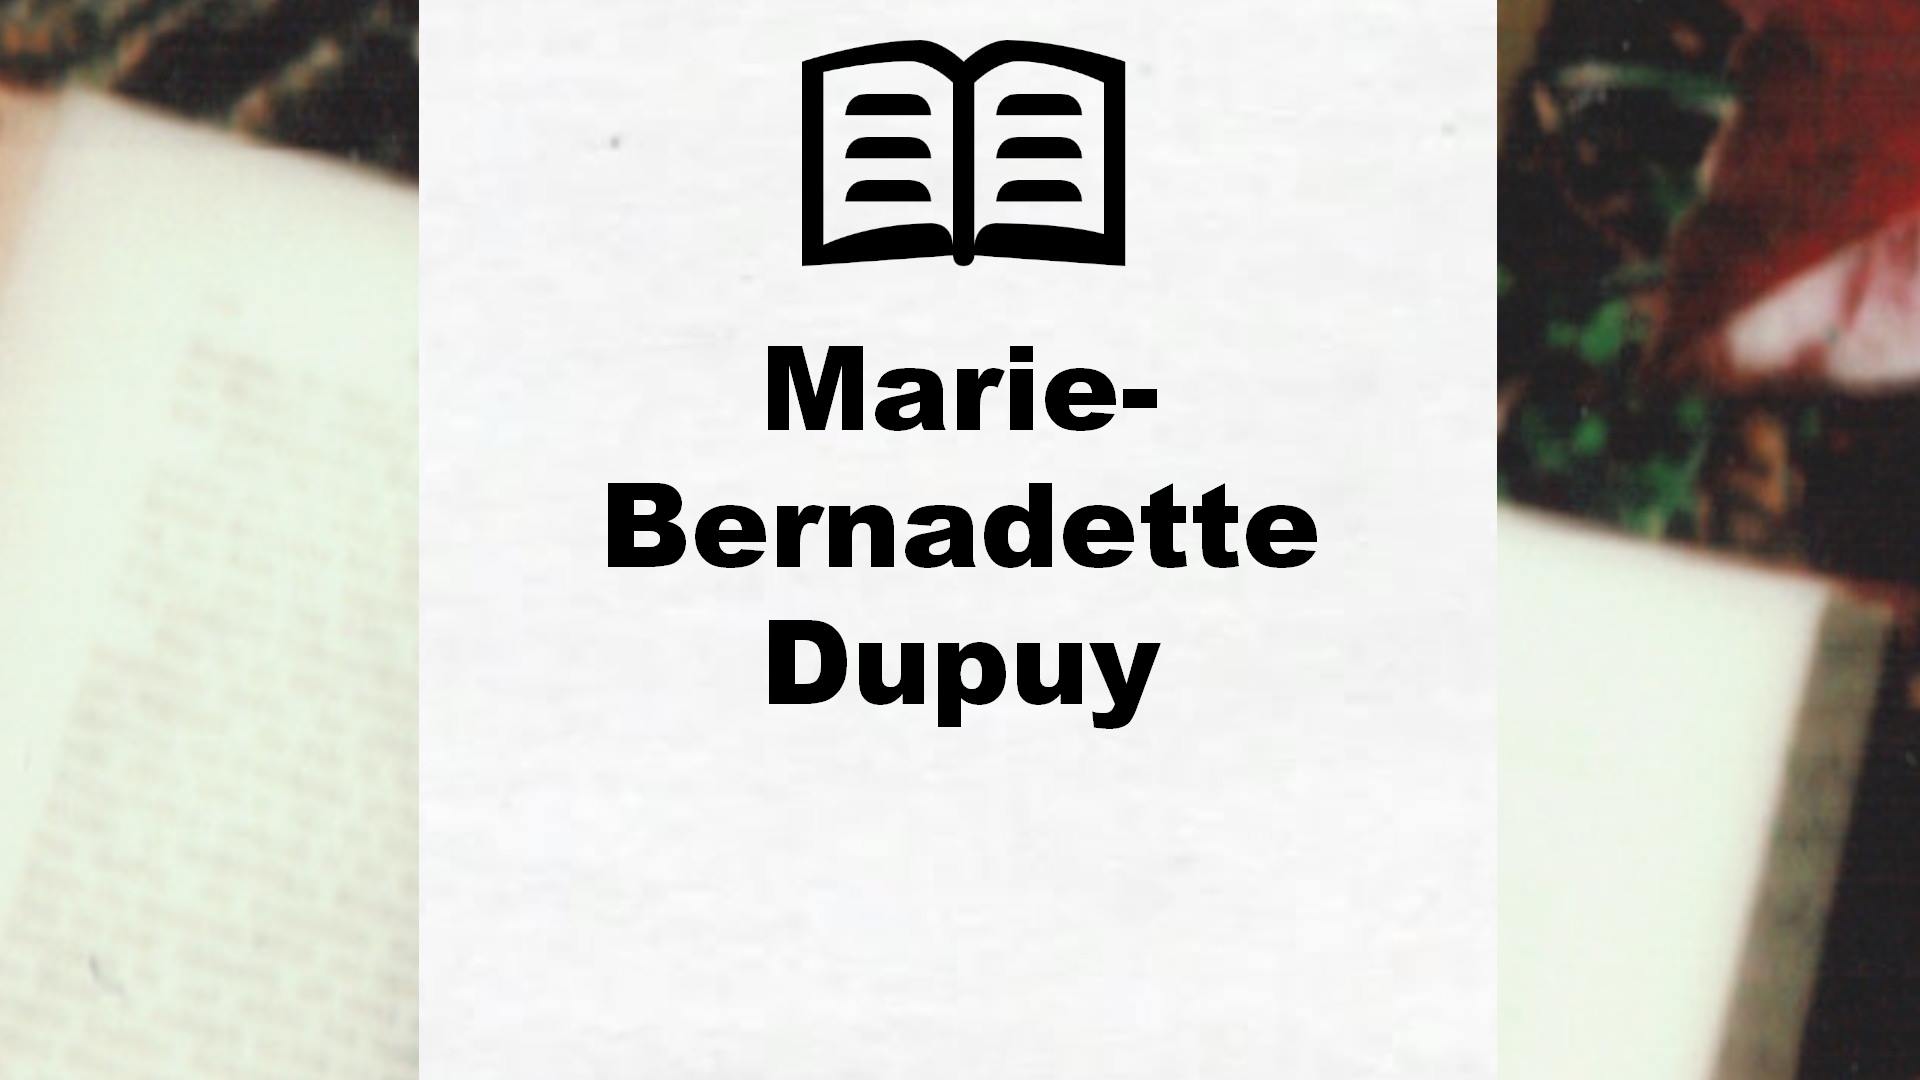 Livres de Marie-Bernadette Dupuy